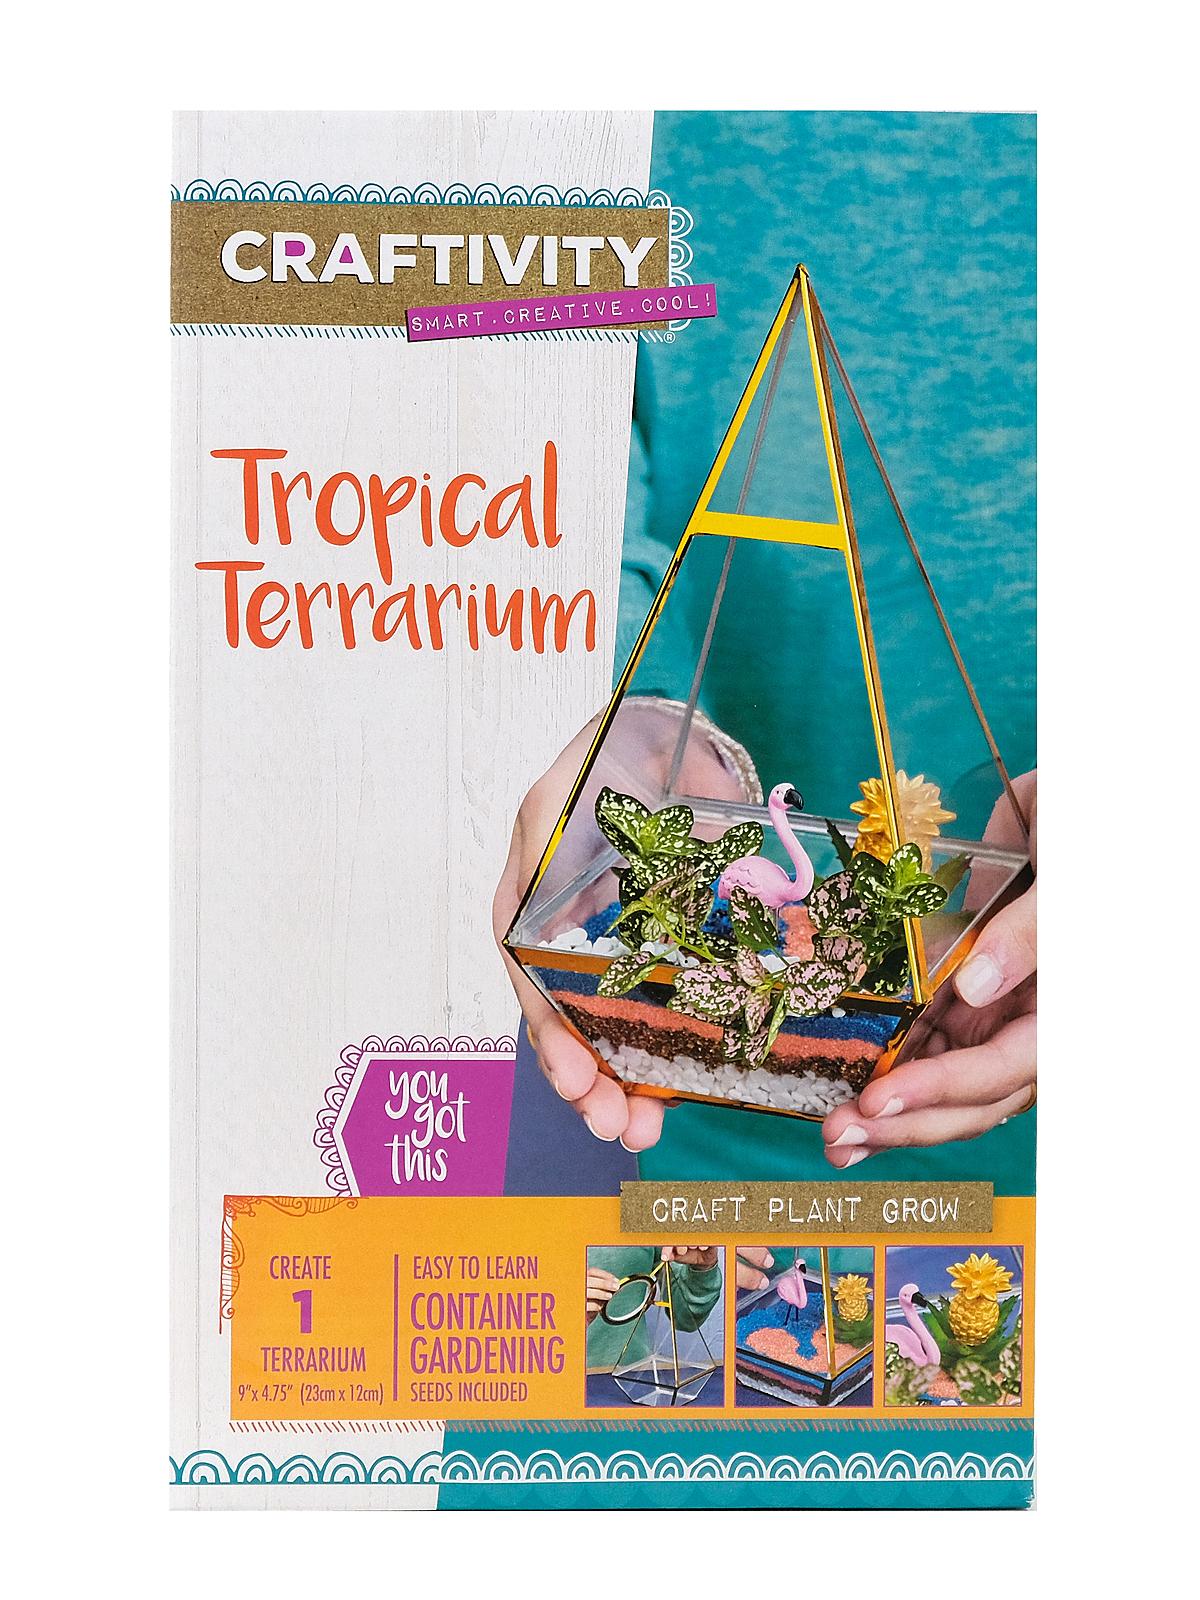 Craftivity Tropical Terrarium